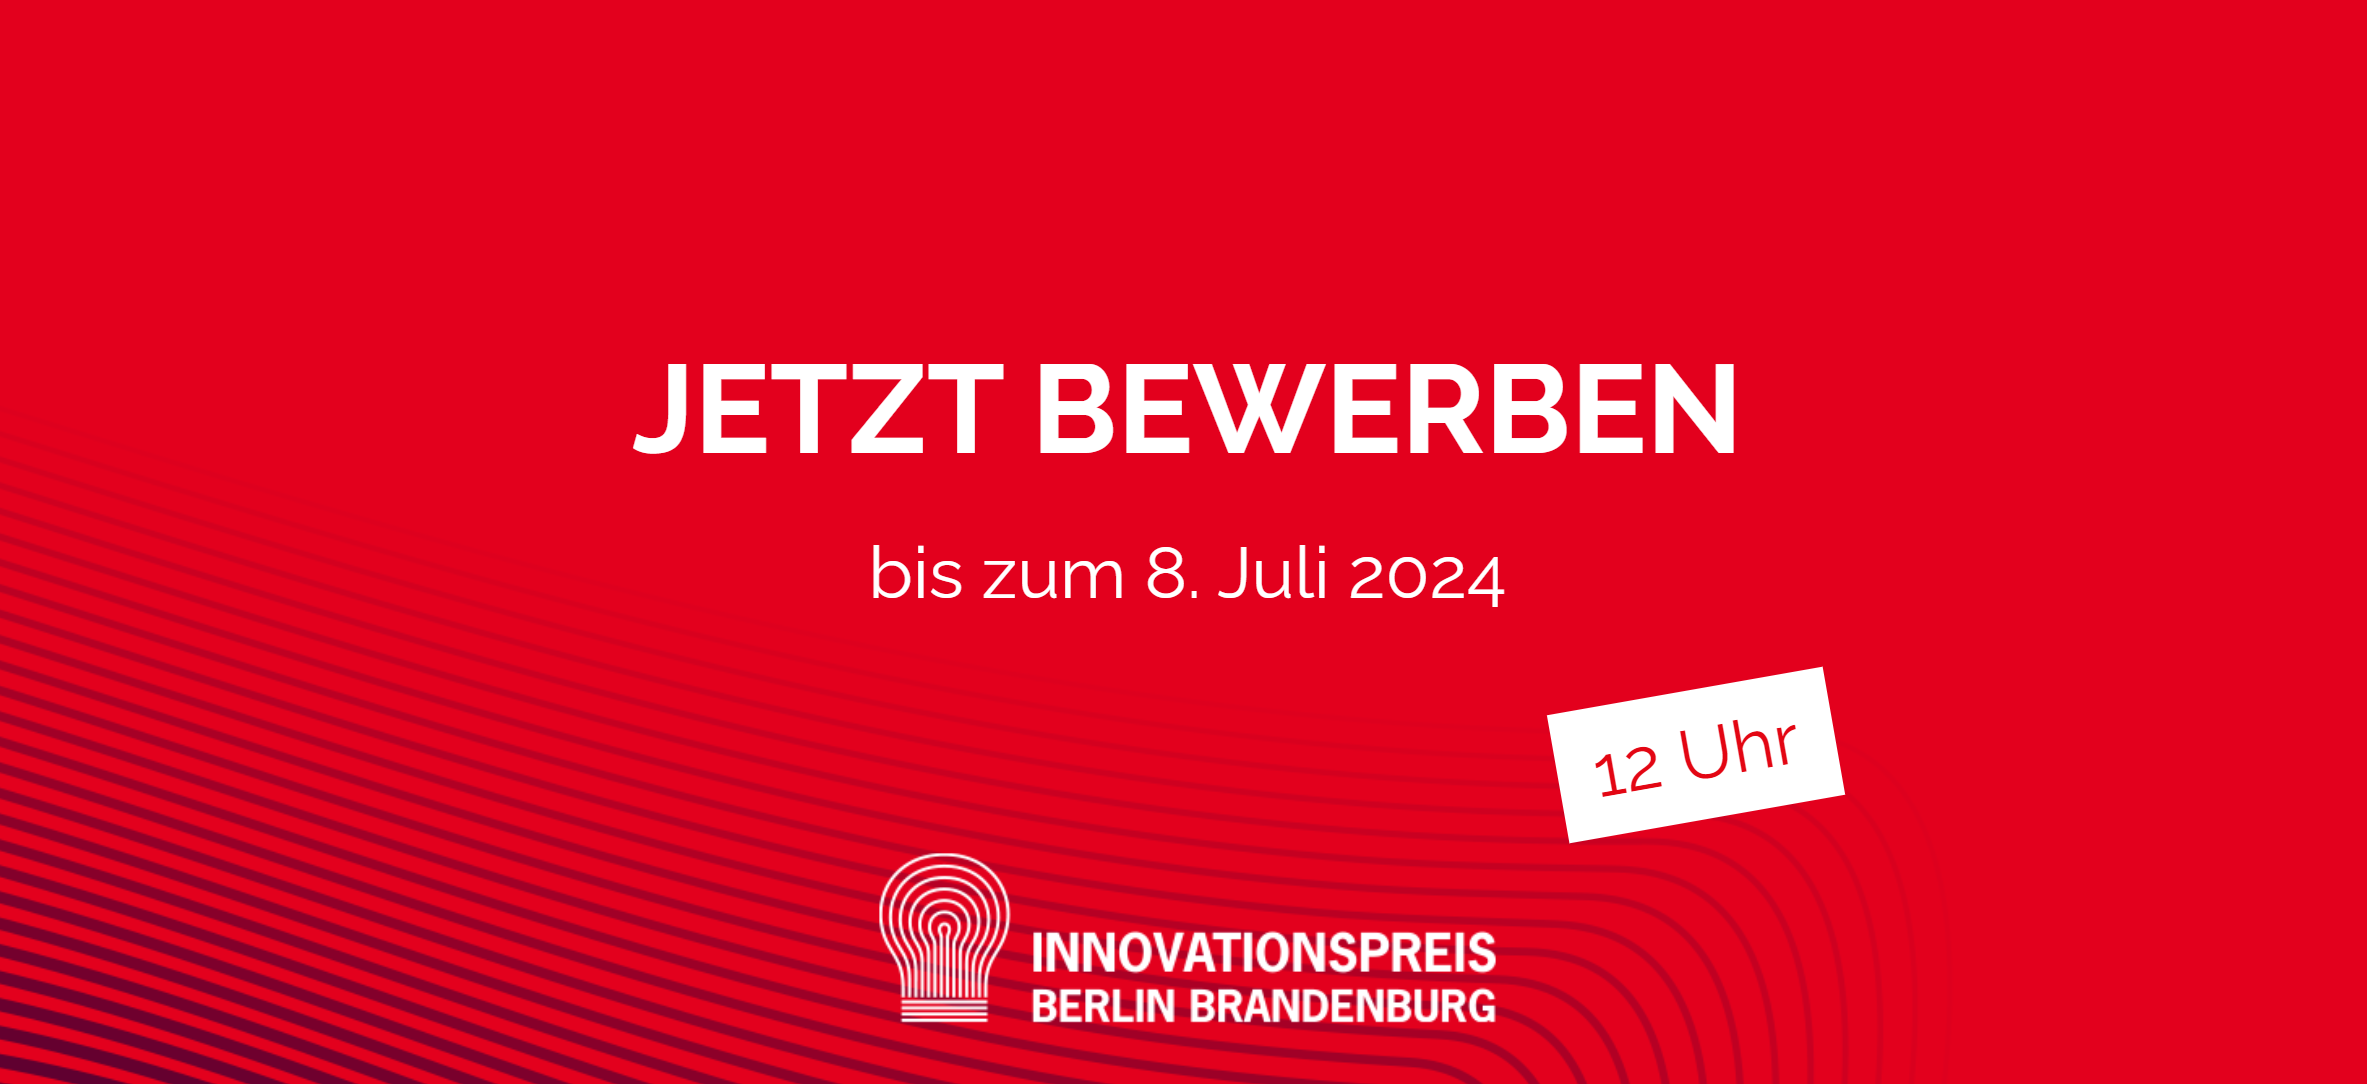 Innovationspreis Berlin Brandenburg 2024 - Bewerben Sie sich jetzt!